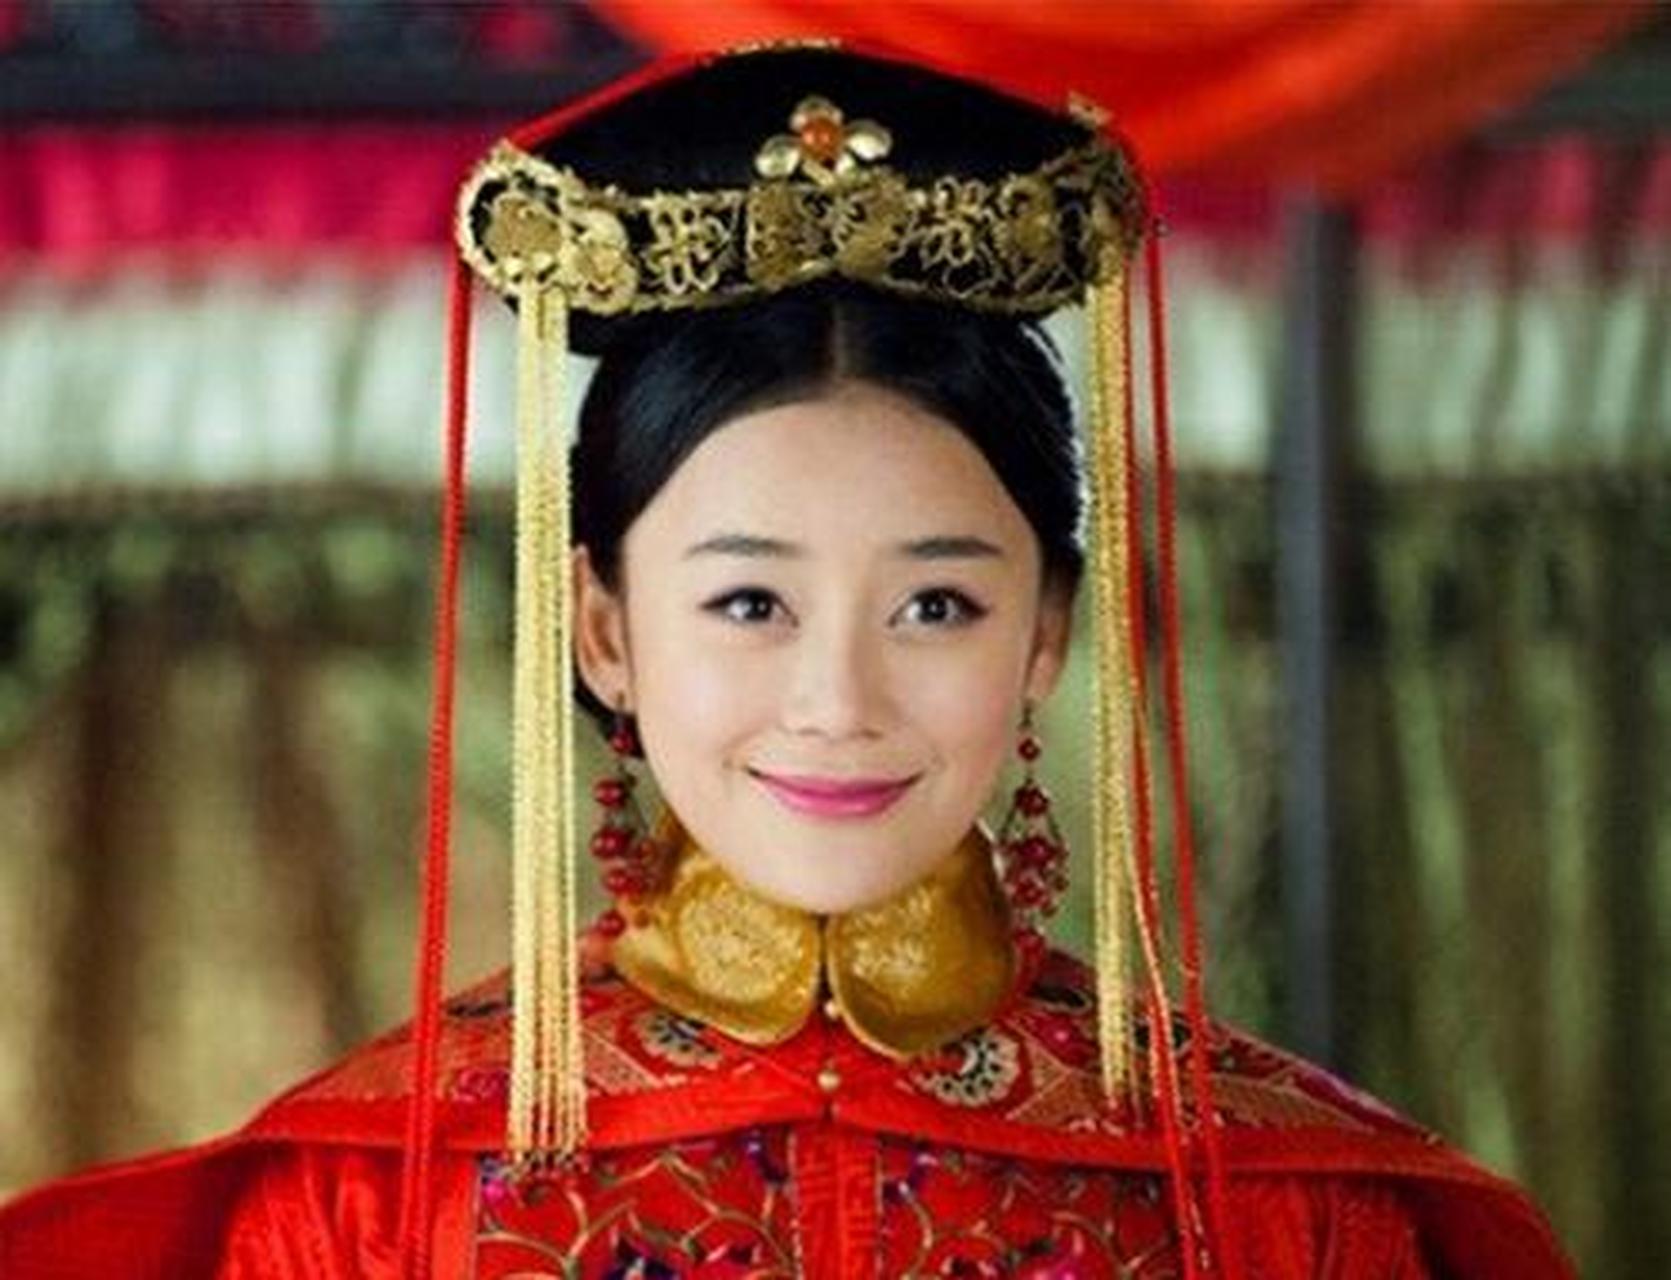 康熙36年,远嫁蒙古的恪靖公主,向康熙提了1个任性的请求:把清水河近5